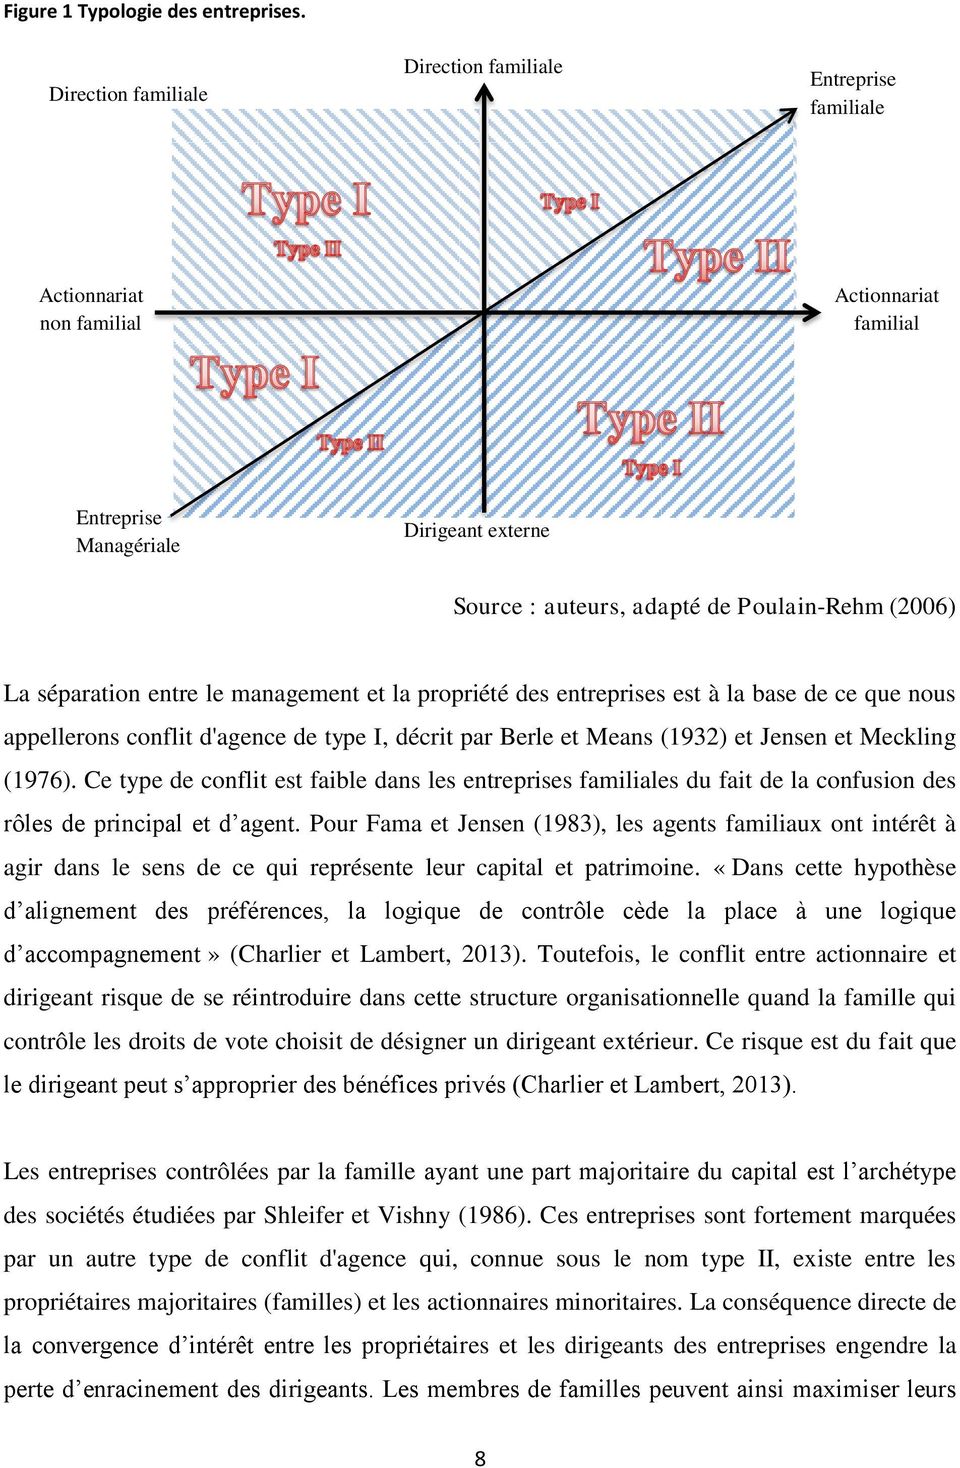 La séparation entre le management et la propriété des entreprises est à la base de ce que nous appellerons conflit d'agence de type I, décrit par Berle et Means (1932) et Jensen et Meckling (1976).